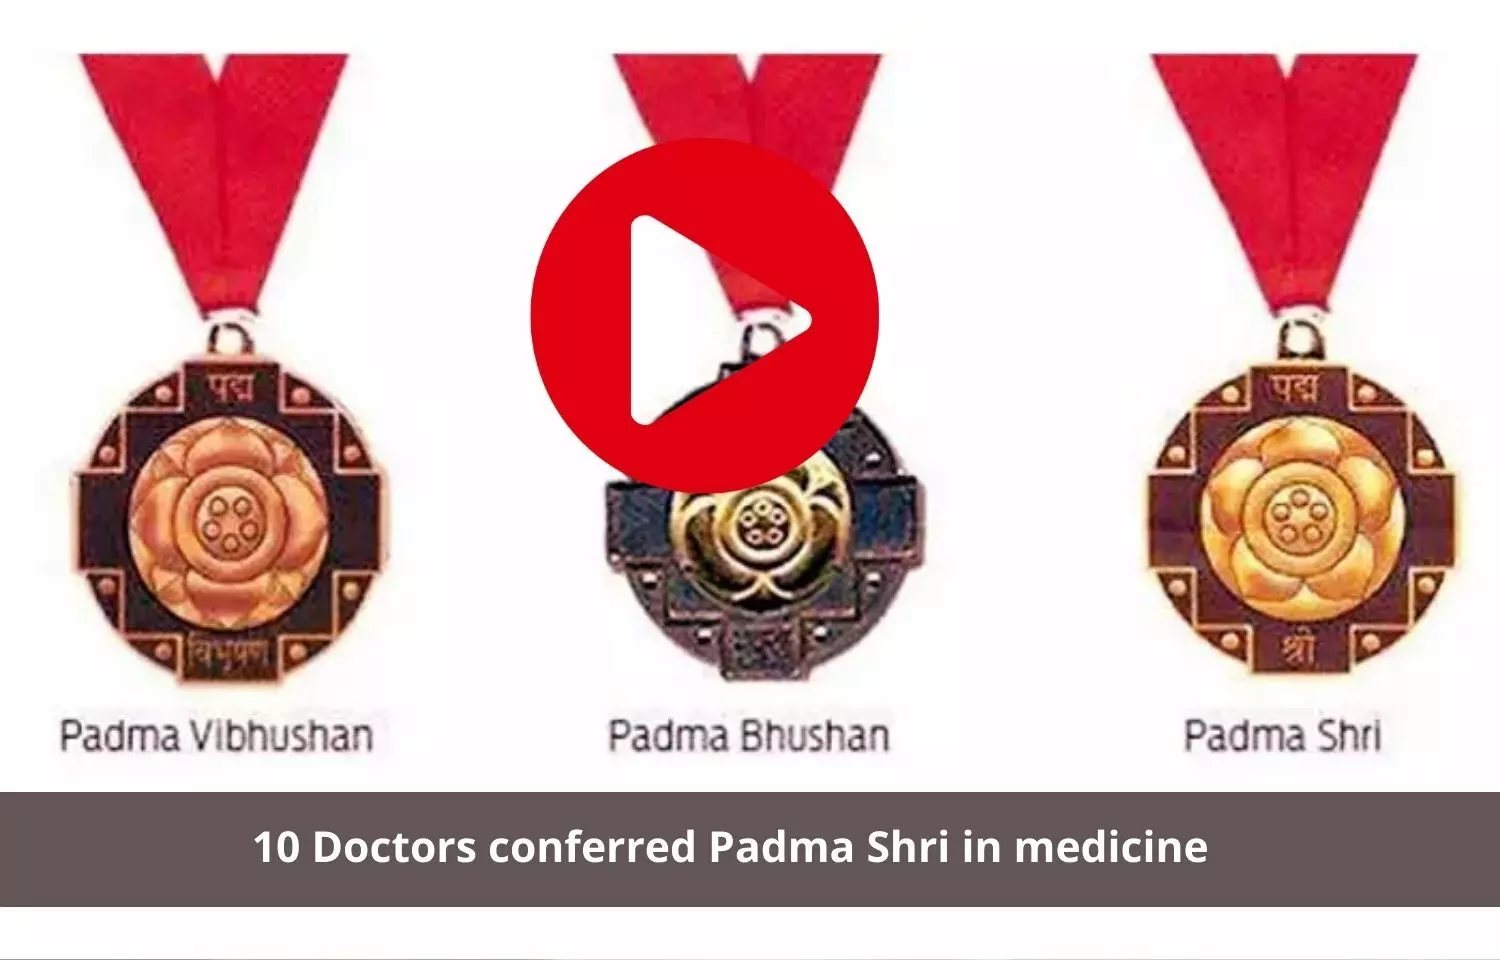 Padma Shri awarded to 10 doctors in medicine field